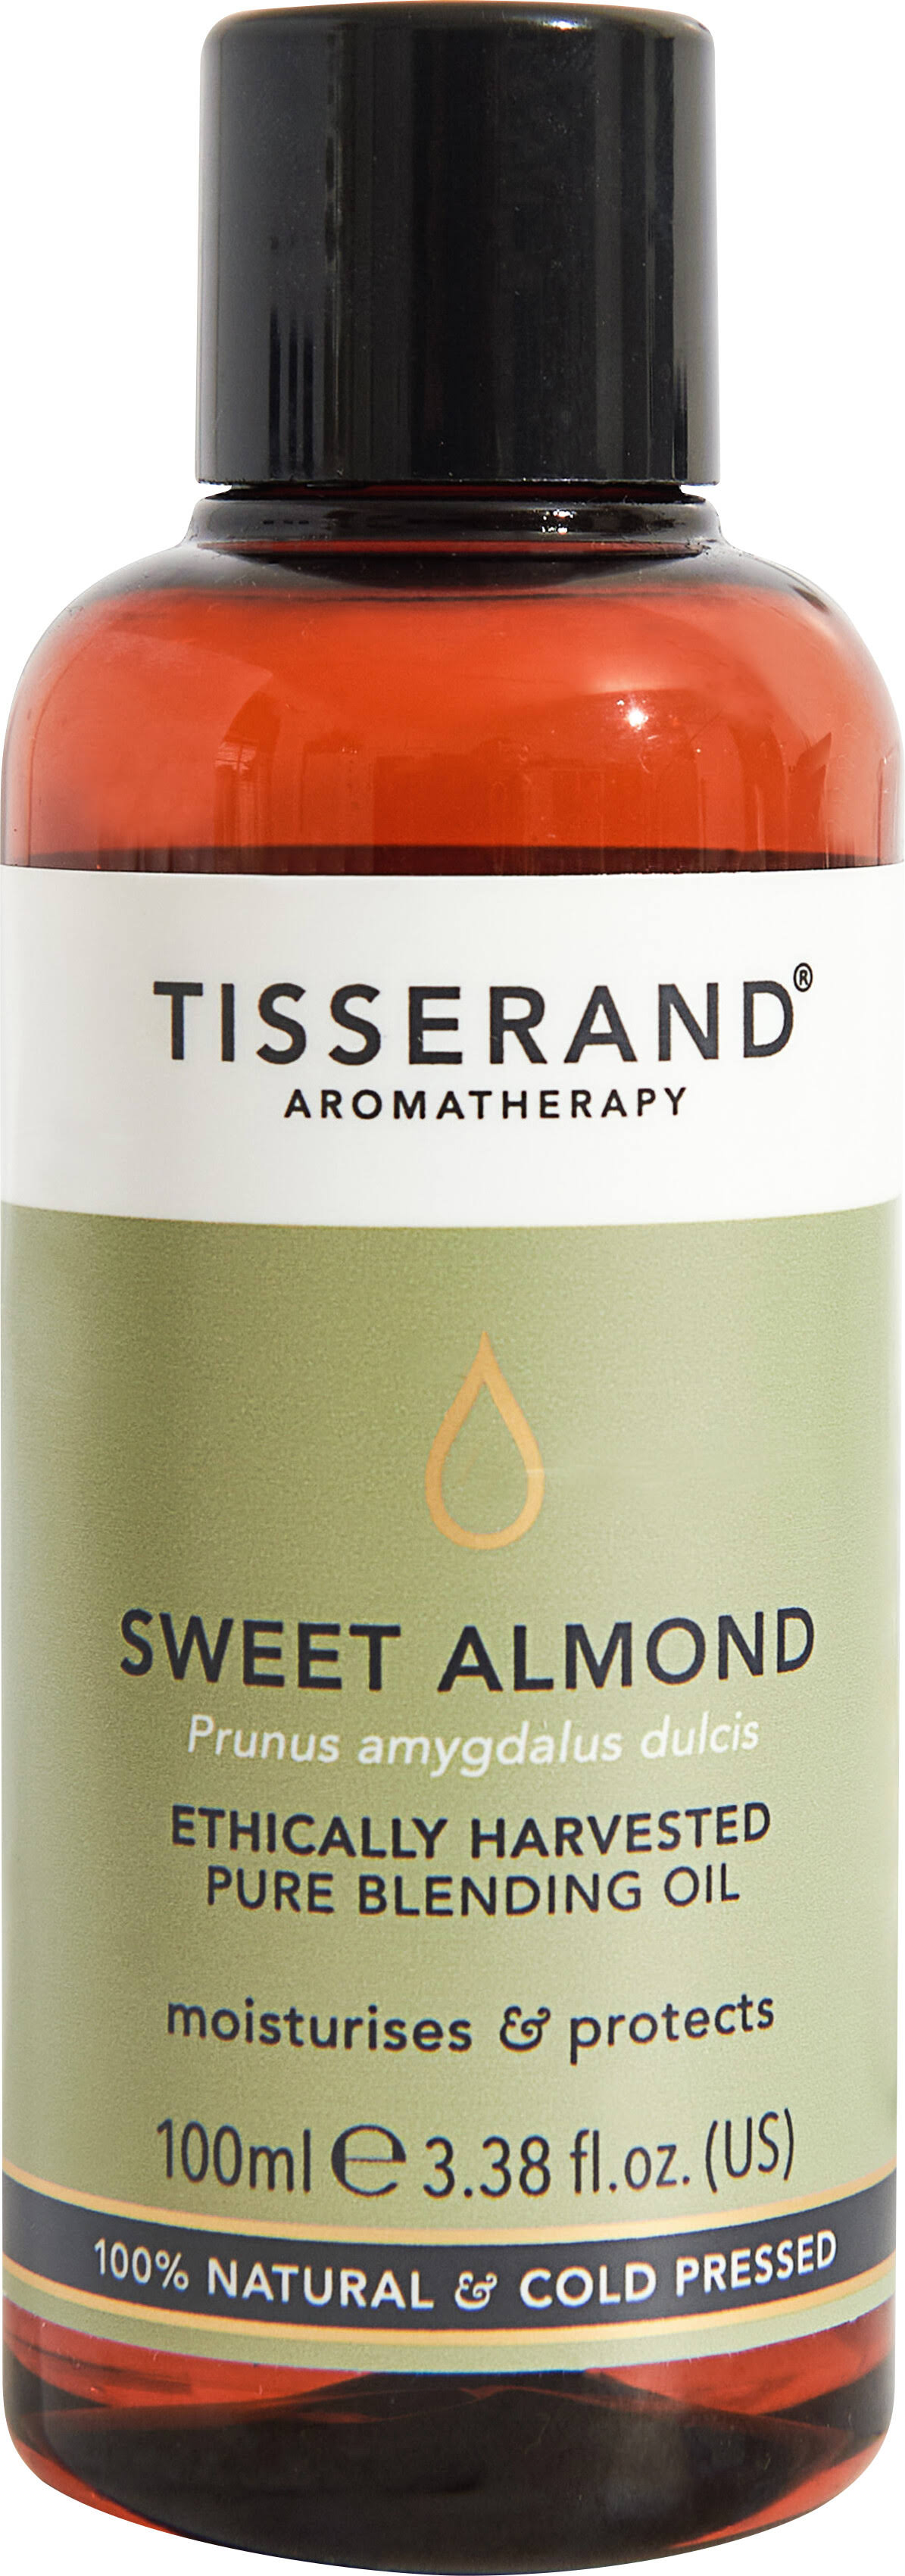 Tisserand Blending Oil Sweet Almond 100ml